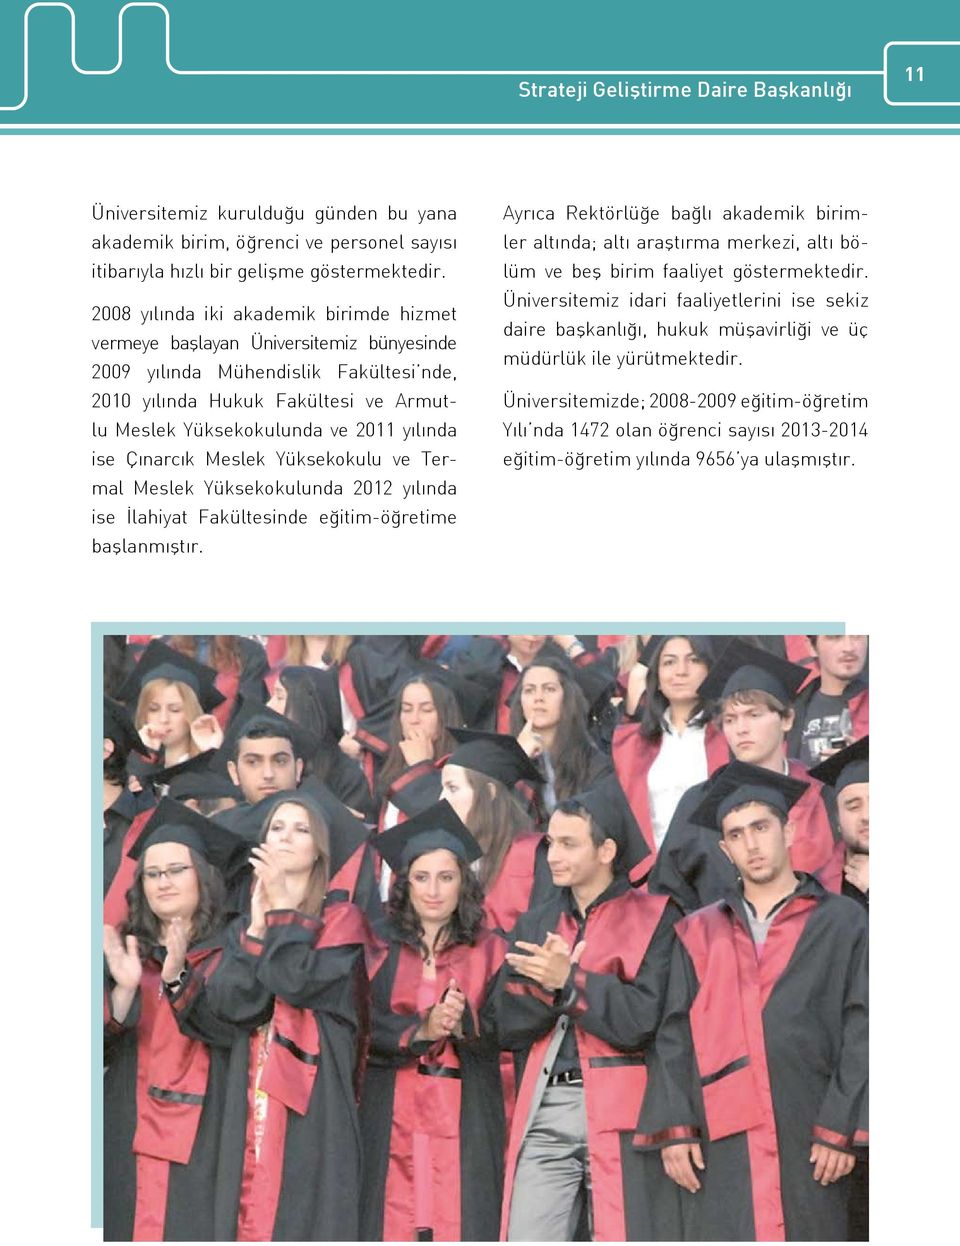 yılında ise Çınarcık Meslek Yüksekokulu ve Termal Meslek Yüksekokulunda 2012 yılında ise İlahiyat Fakültesinde eğitim-öğretime başlanmıştır.